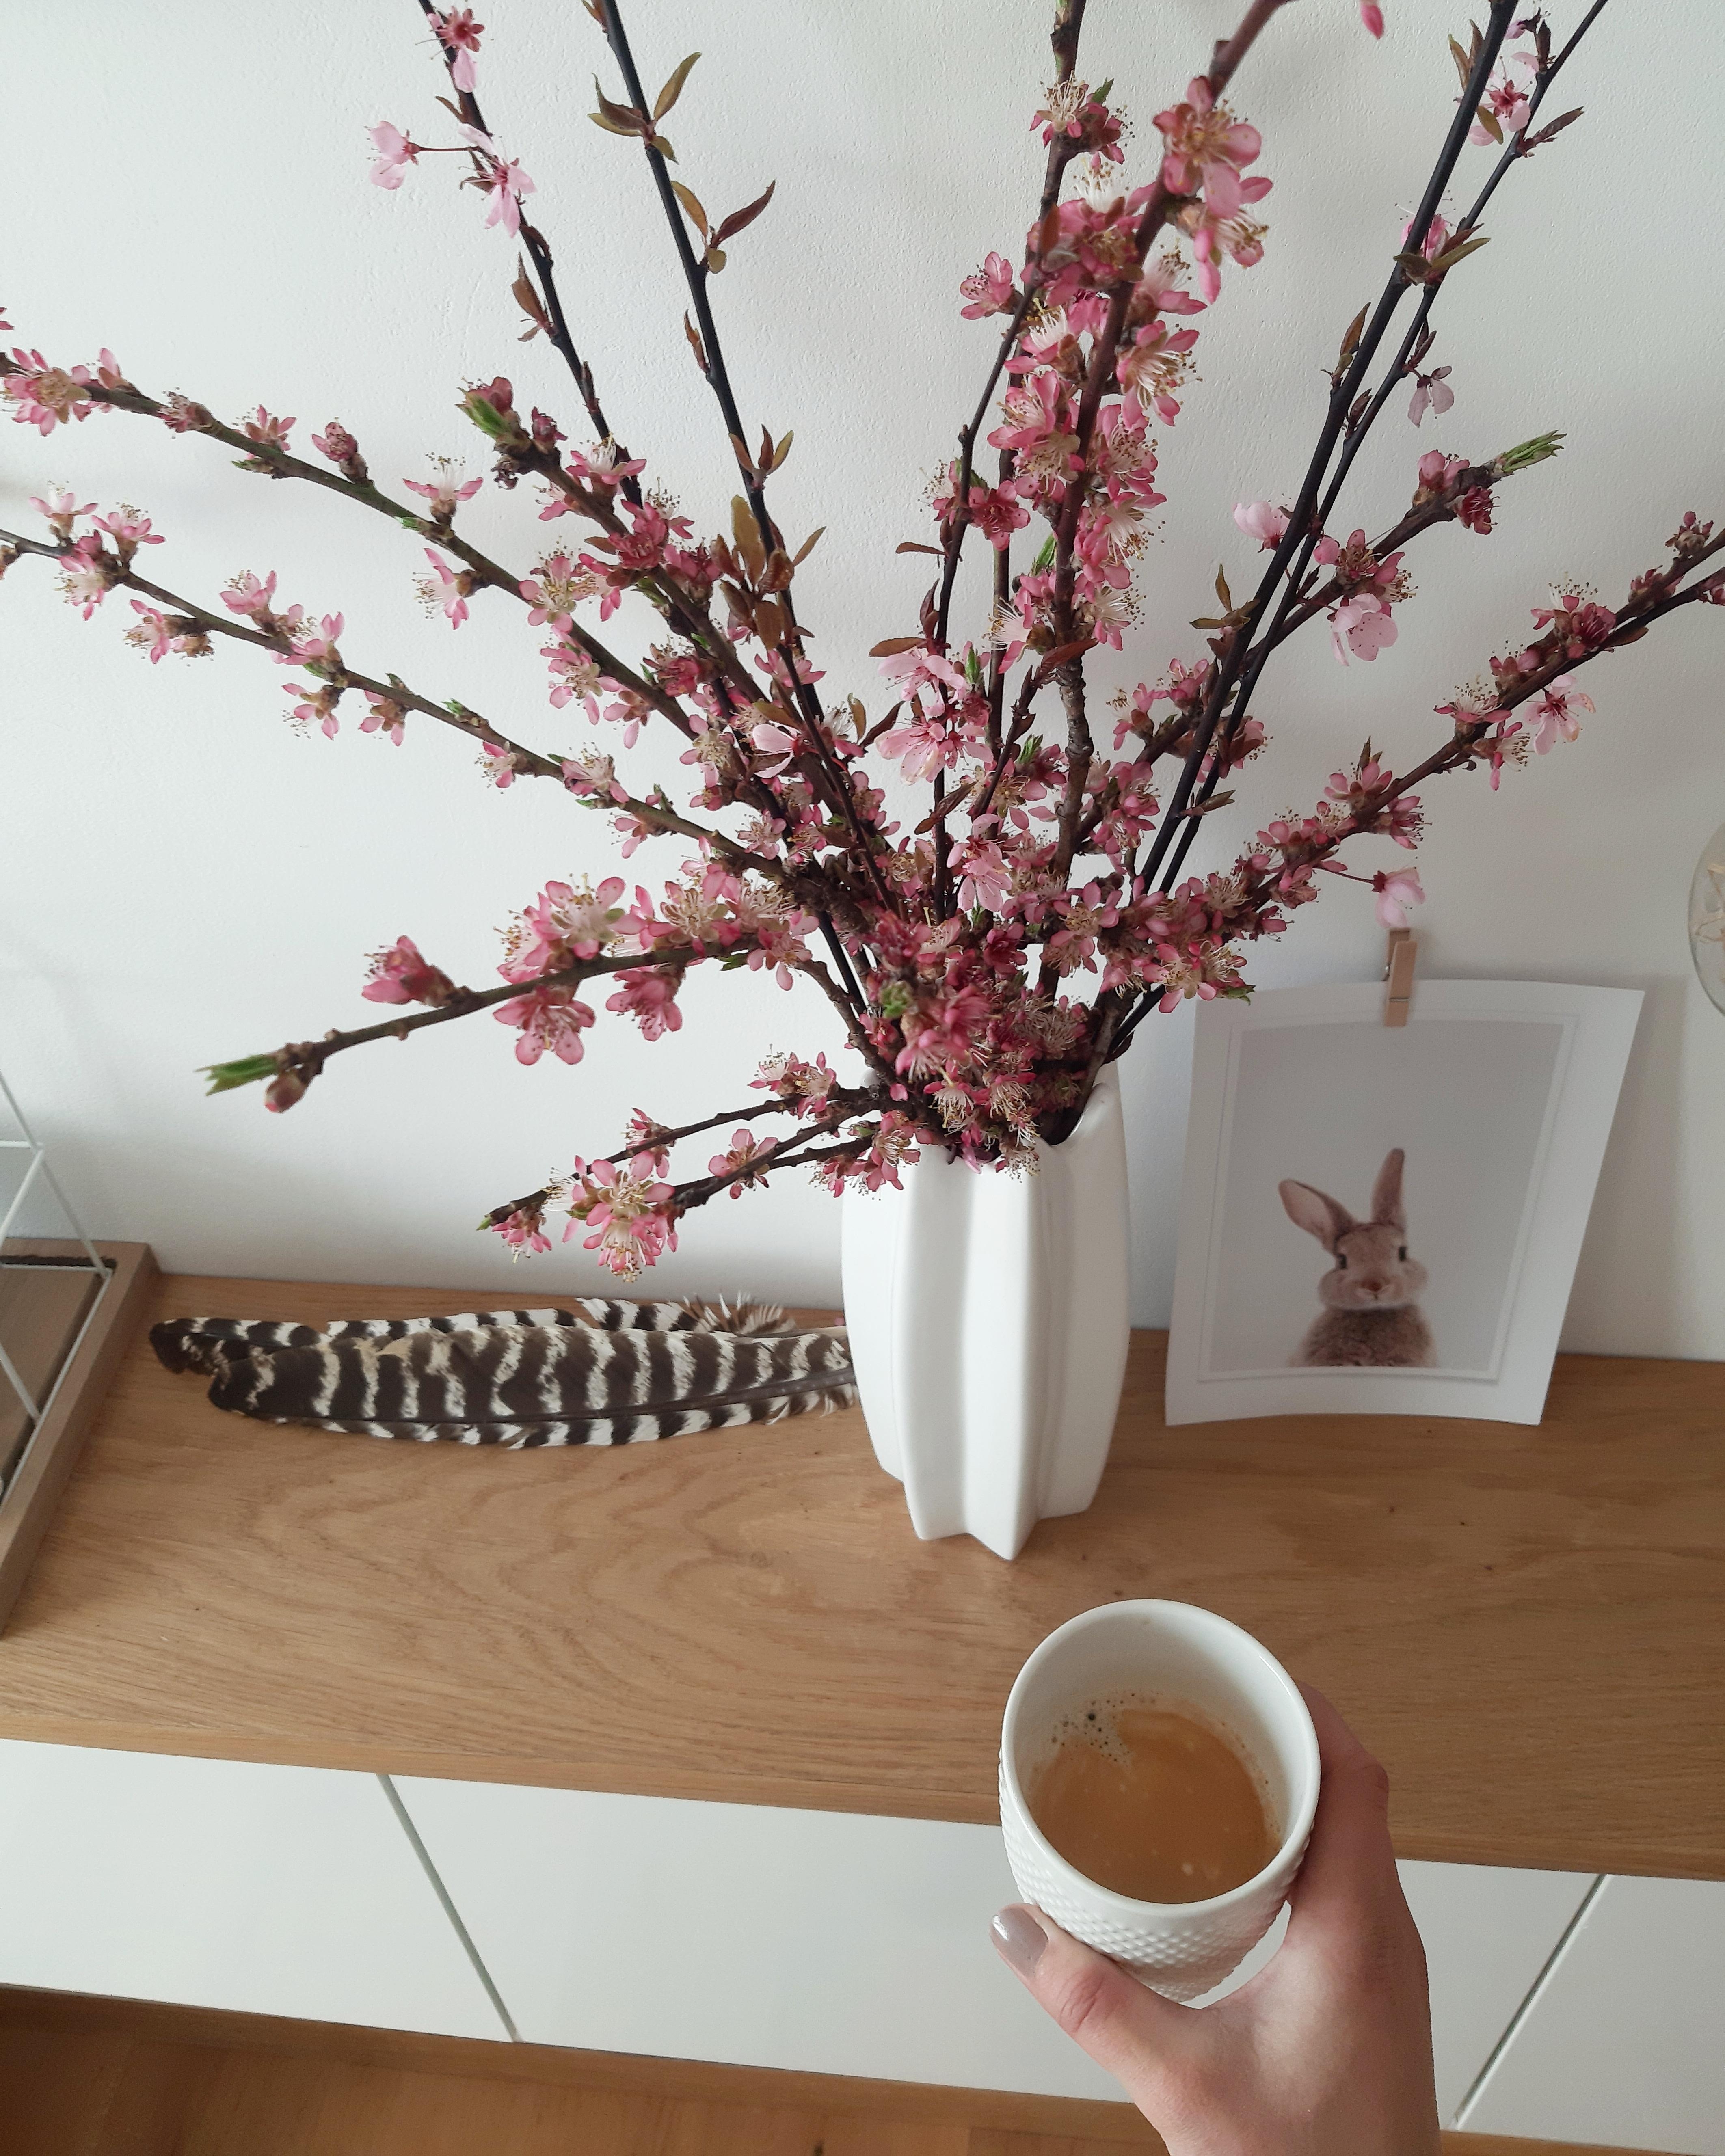 🌸🌸🌸
#skandistyle #whiteandwood #deko #flowers #livingroom #meinzuhause #skandi #hygge